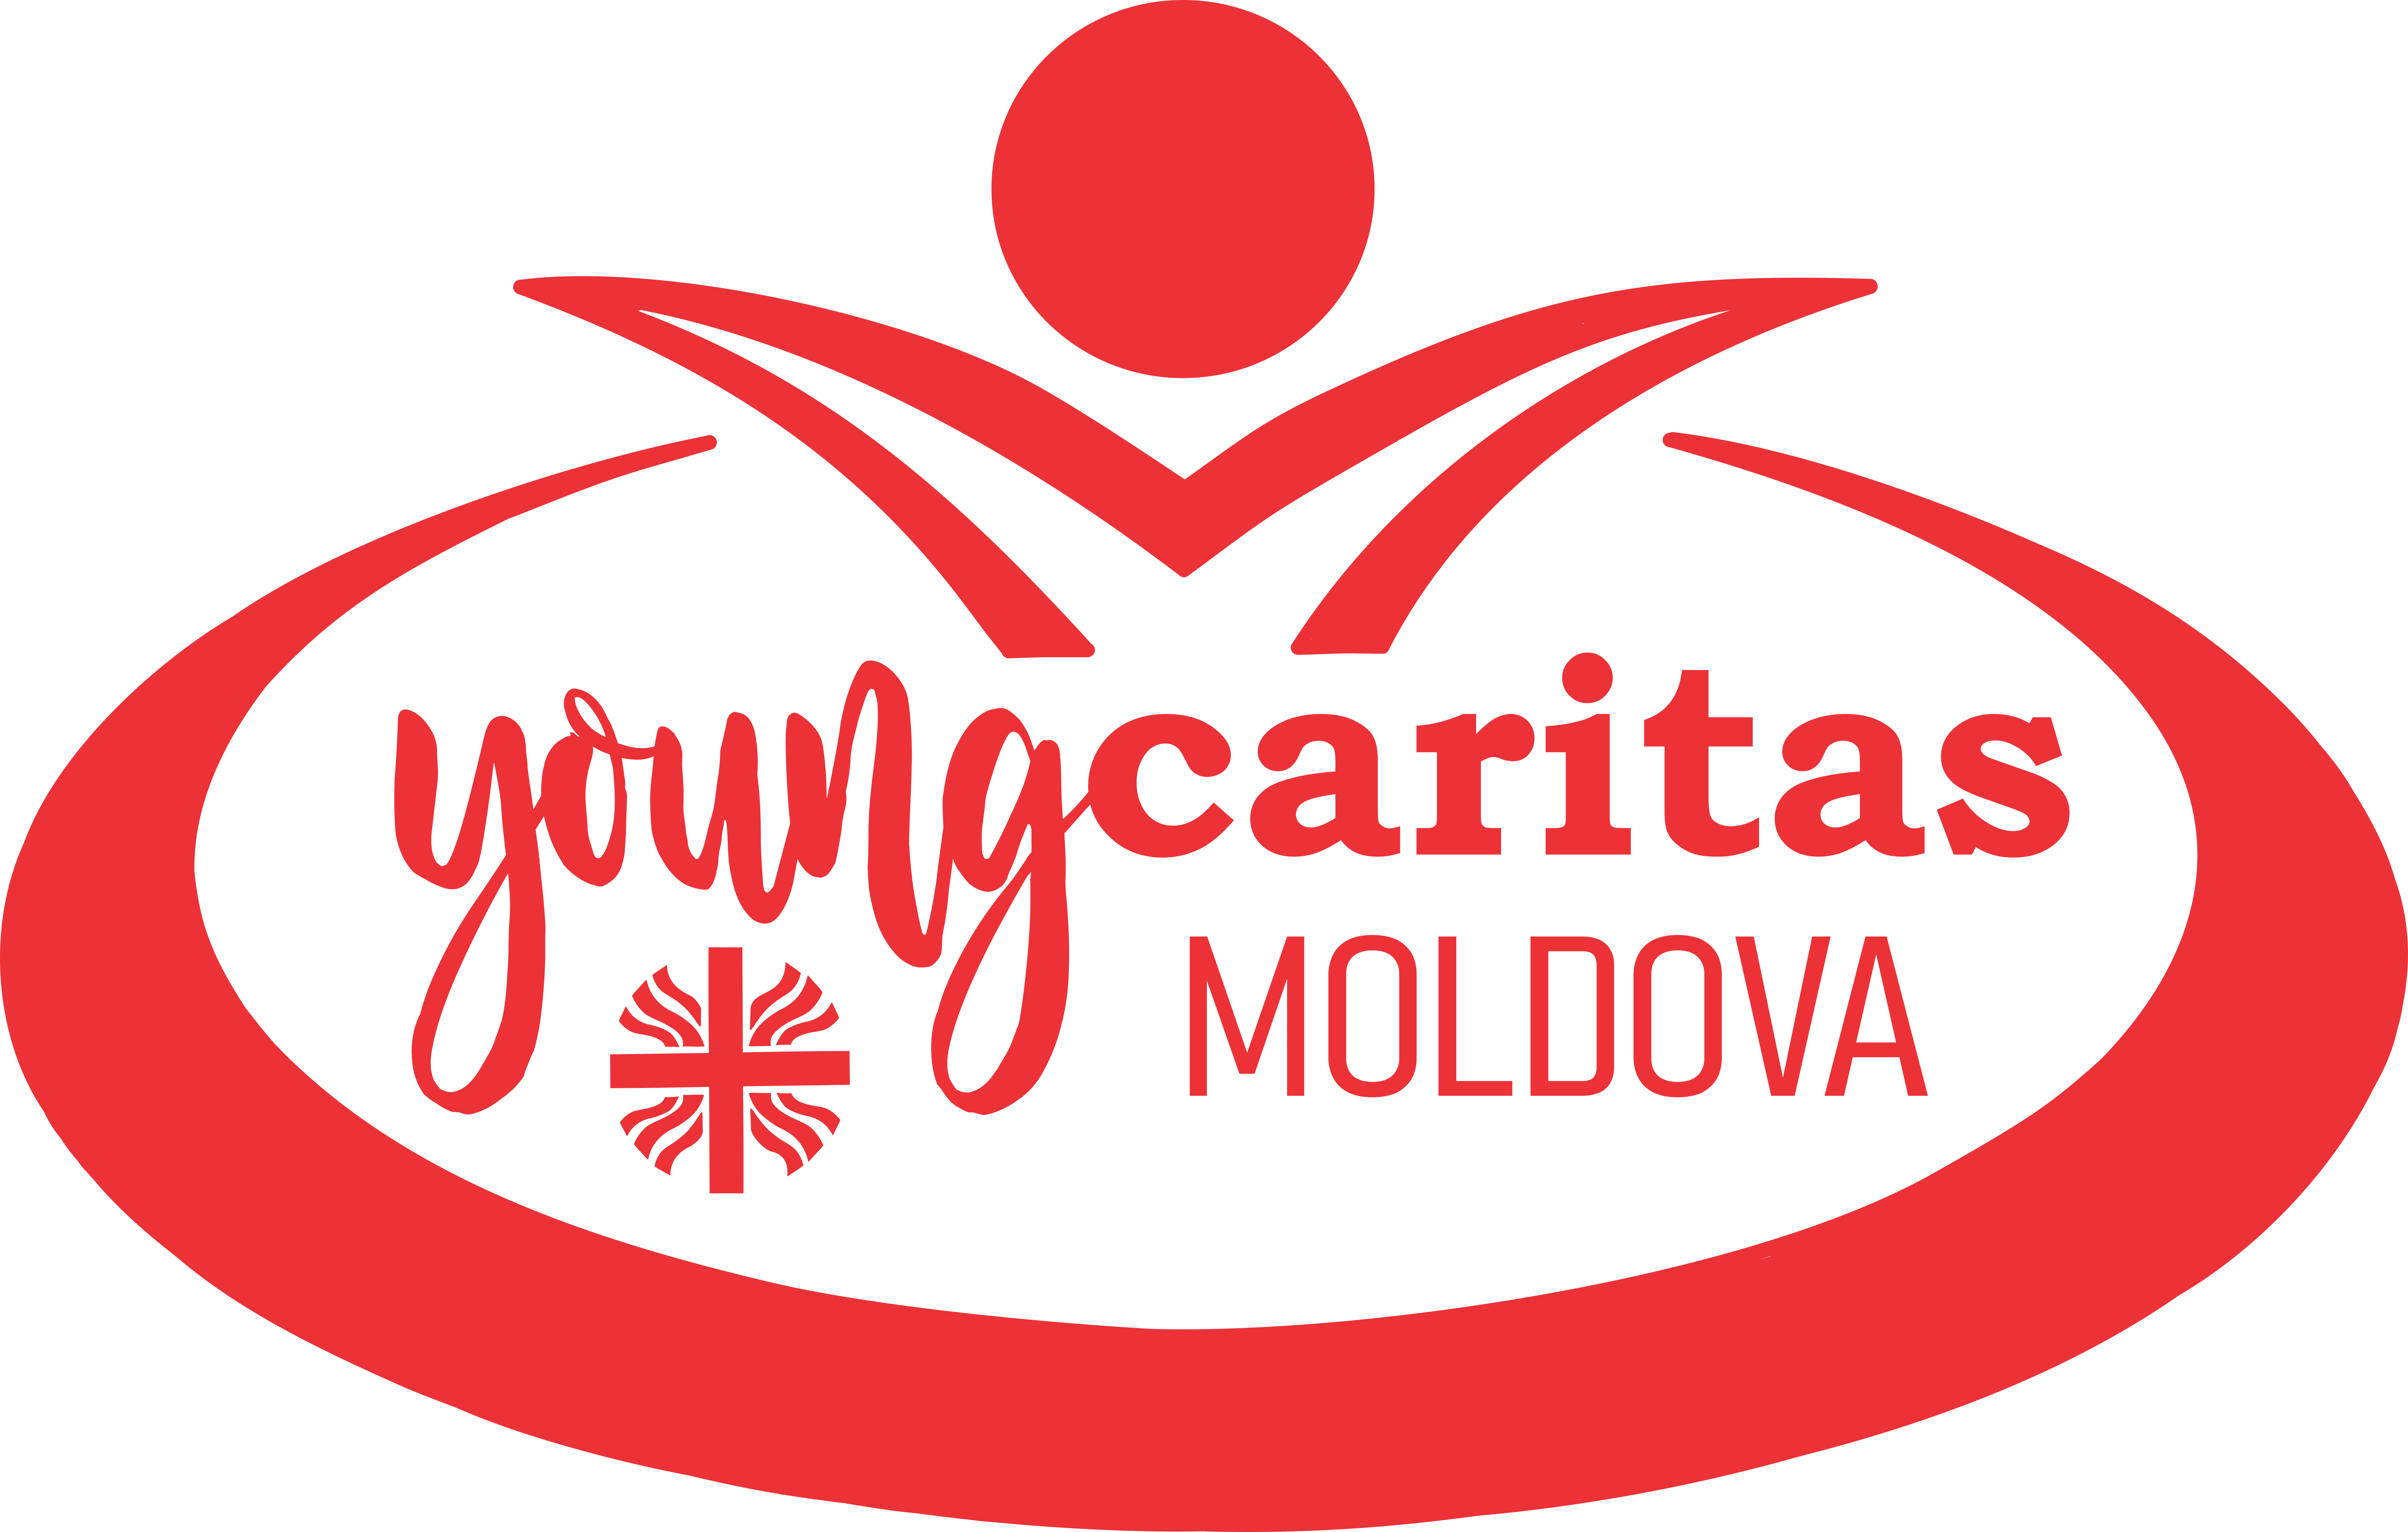 Young Caritas Moldova